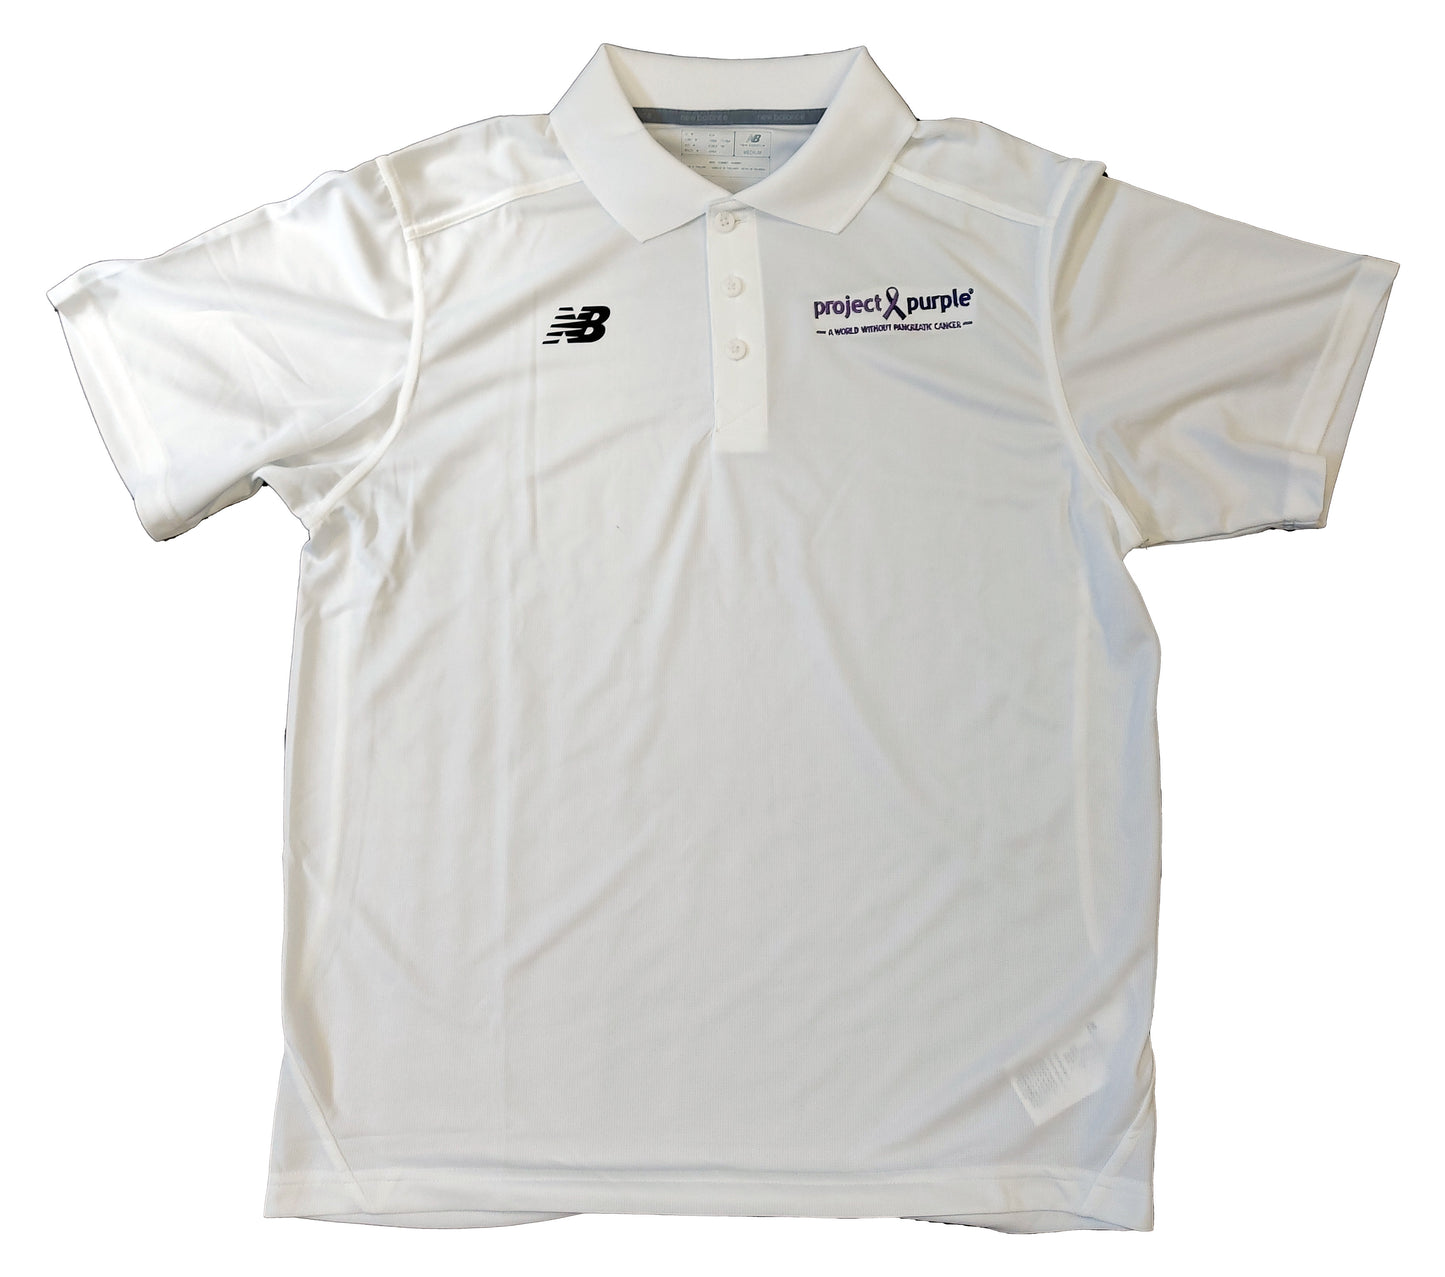 New Balance Golf Shirt